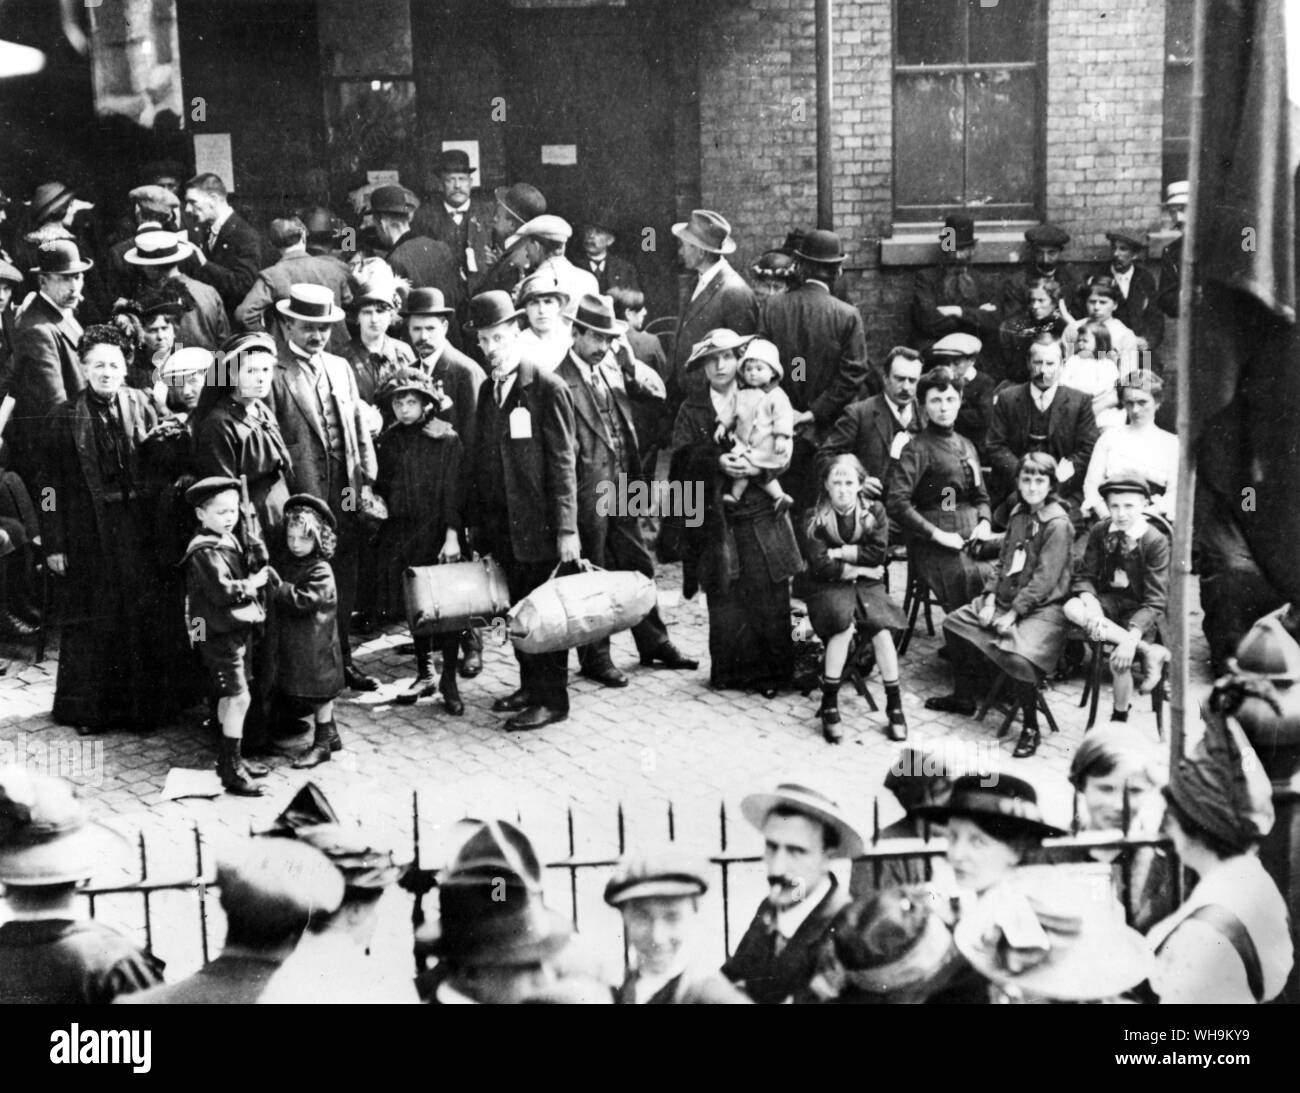 Sett. 1914: belga di rifugiati al di fuori dei Hudson mobili del repository, Victoria Street, Londra. Foto Stock